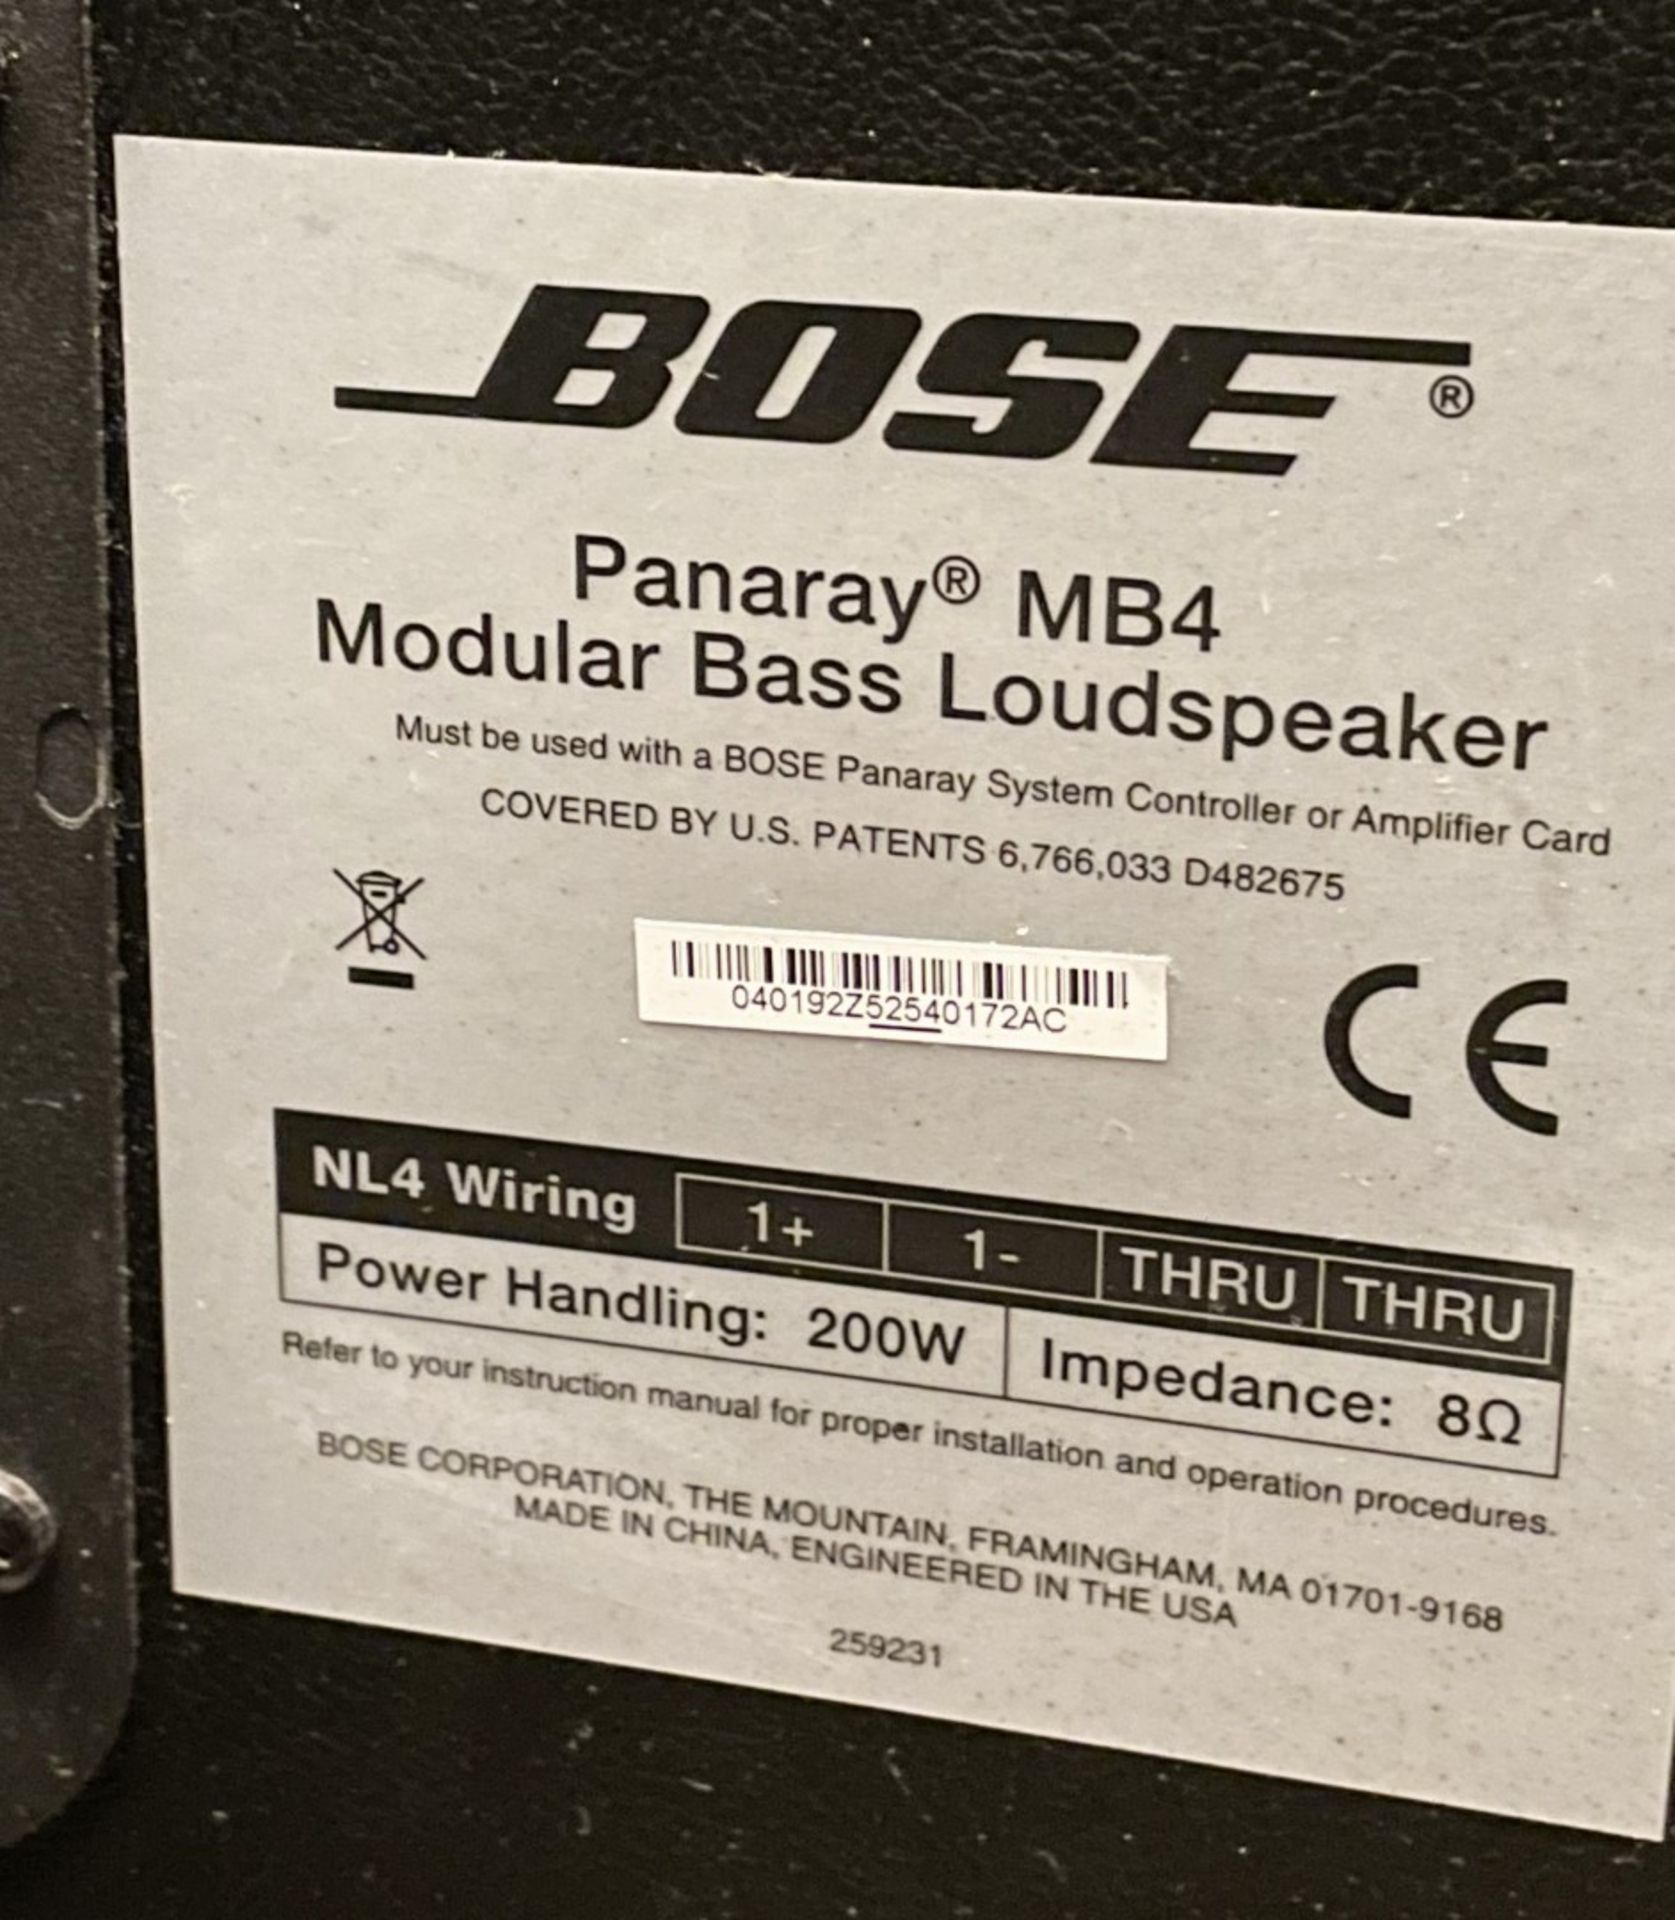 1 x Bose Panaray MB4 Modular Bass Loudspeaker - Image 3 of 6